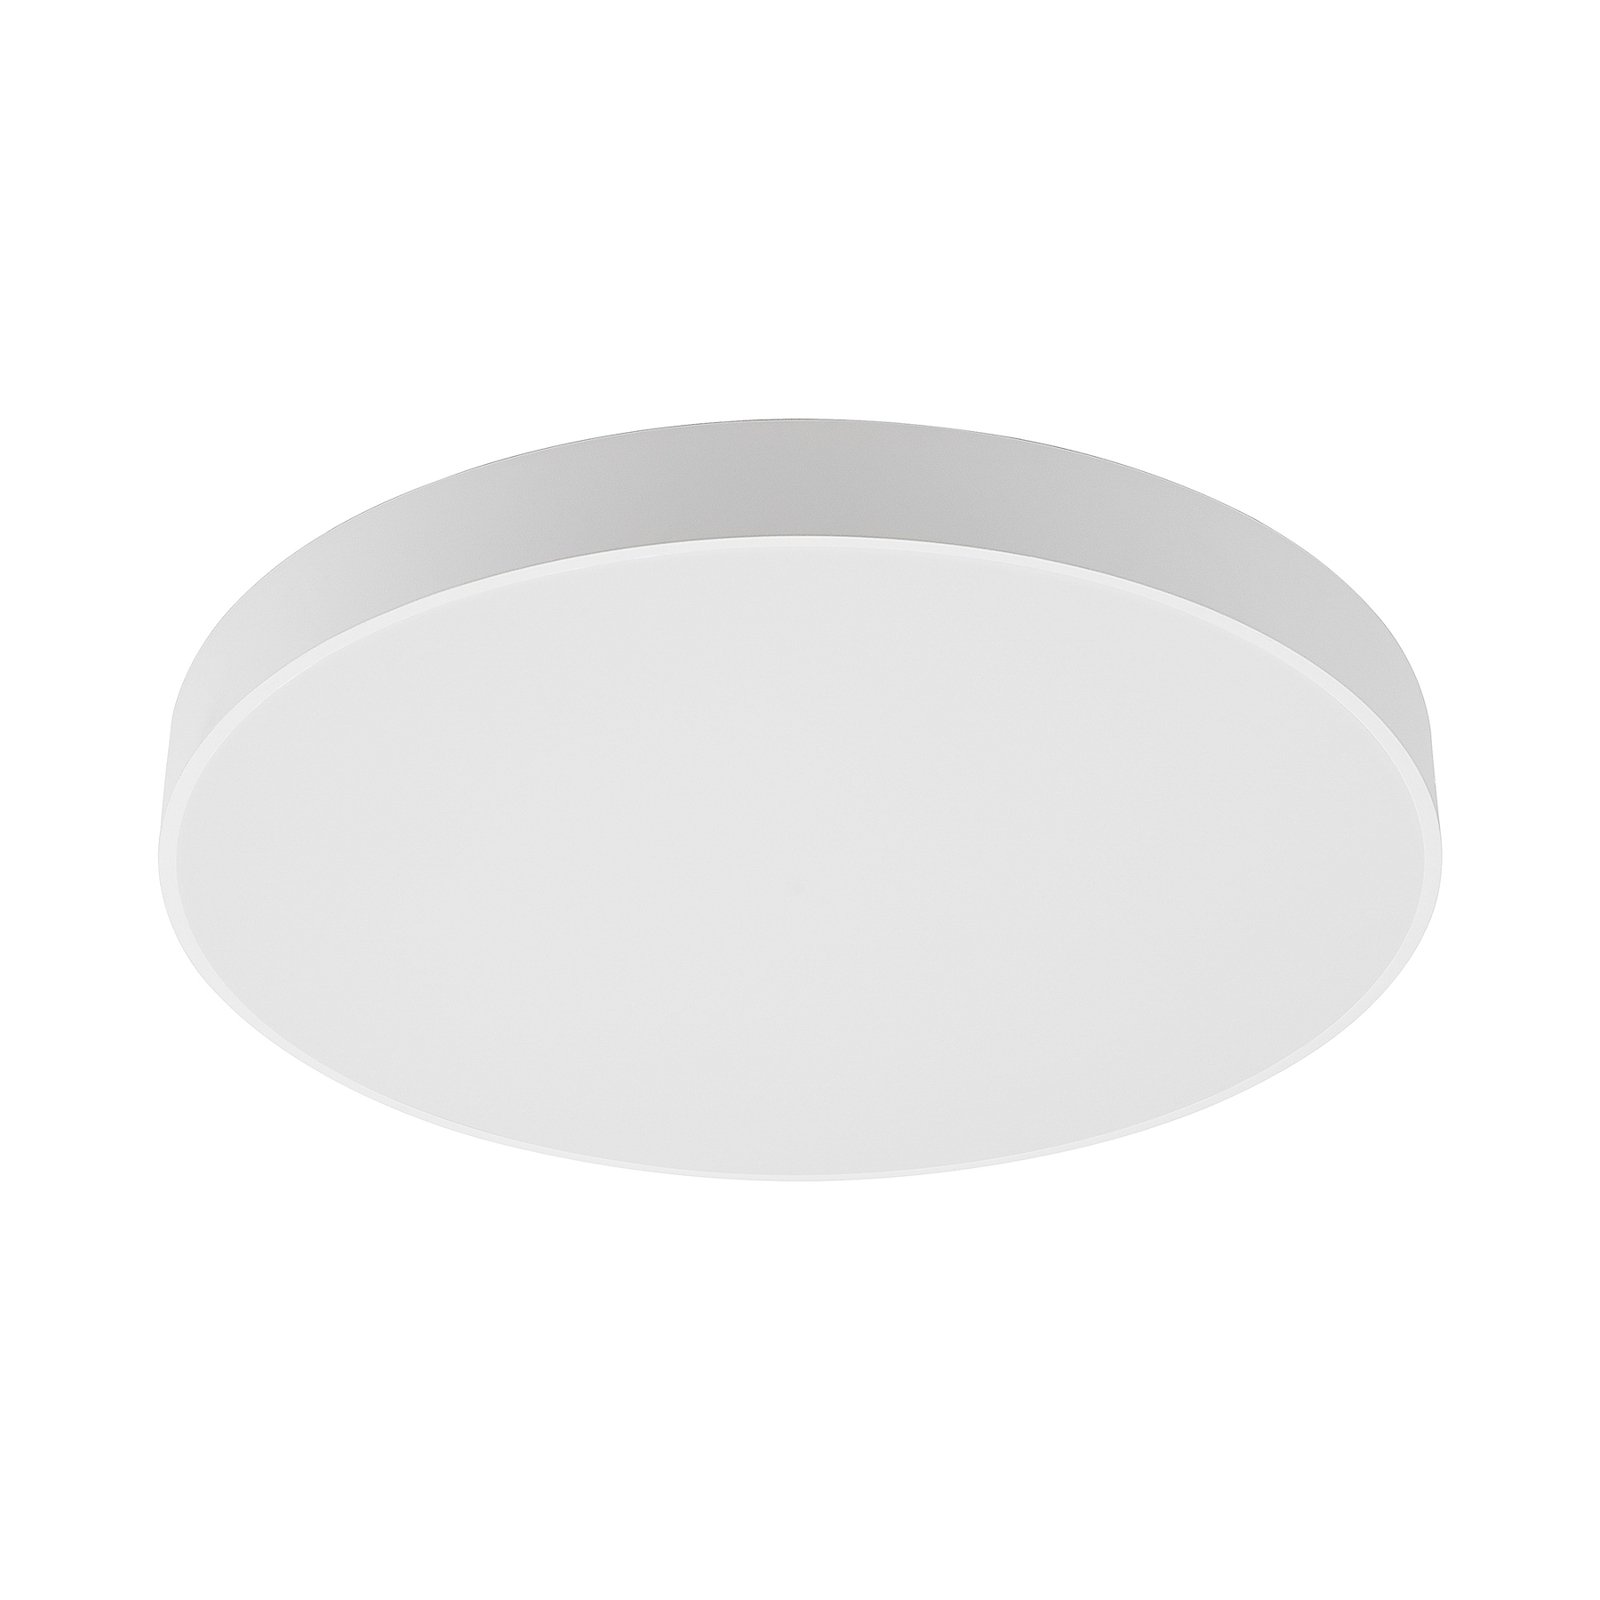 Arcchio Vanida LED-Deckenlampe, weiß, 60 cm